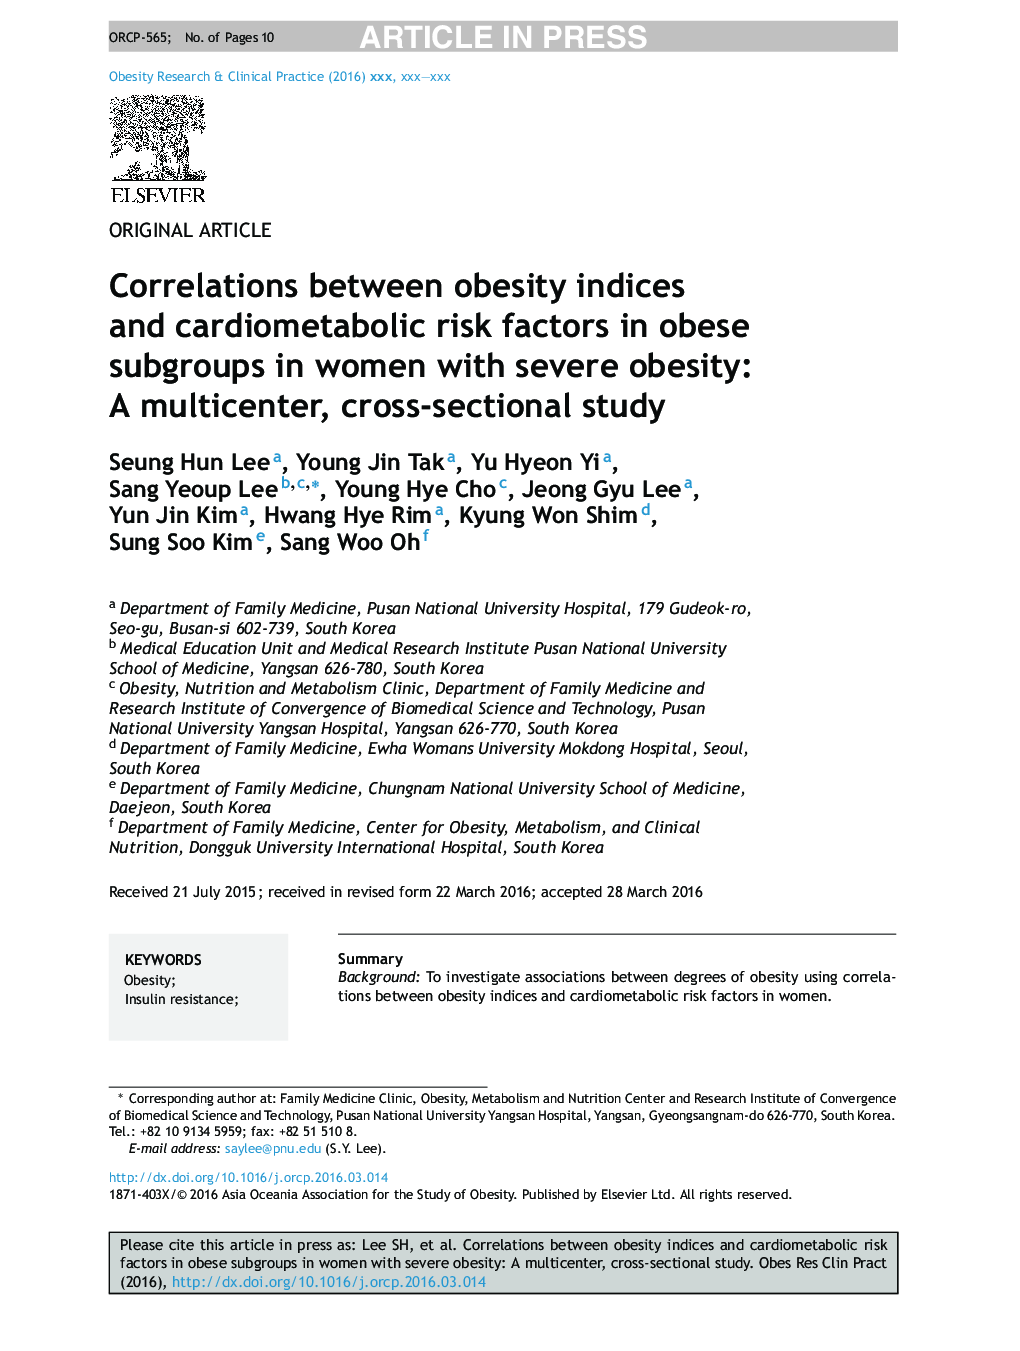 همبستگی بین شاخص های چاقی و عوامل خطرزای قلب و عروق در زیرگروه های چاق در زنان با چاقی شدید: یک مطالعه چند مرحله ای، مقطعی 